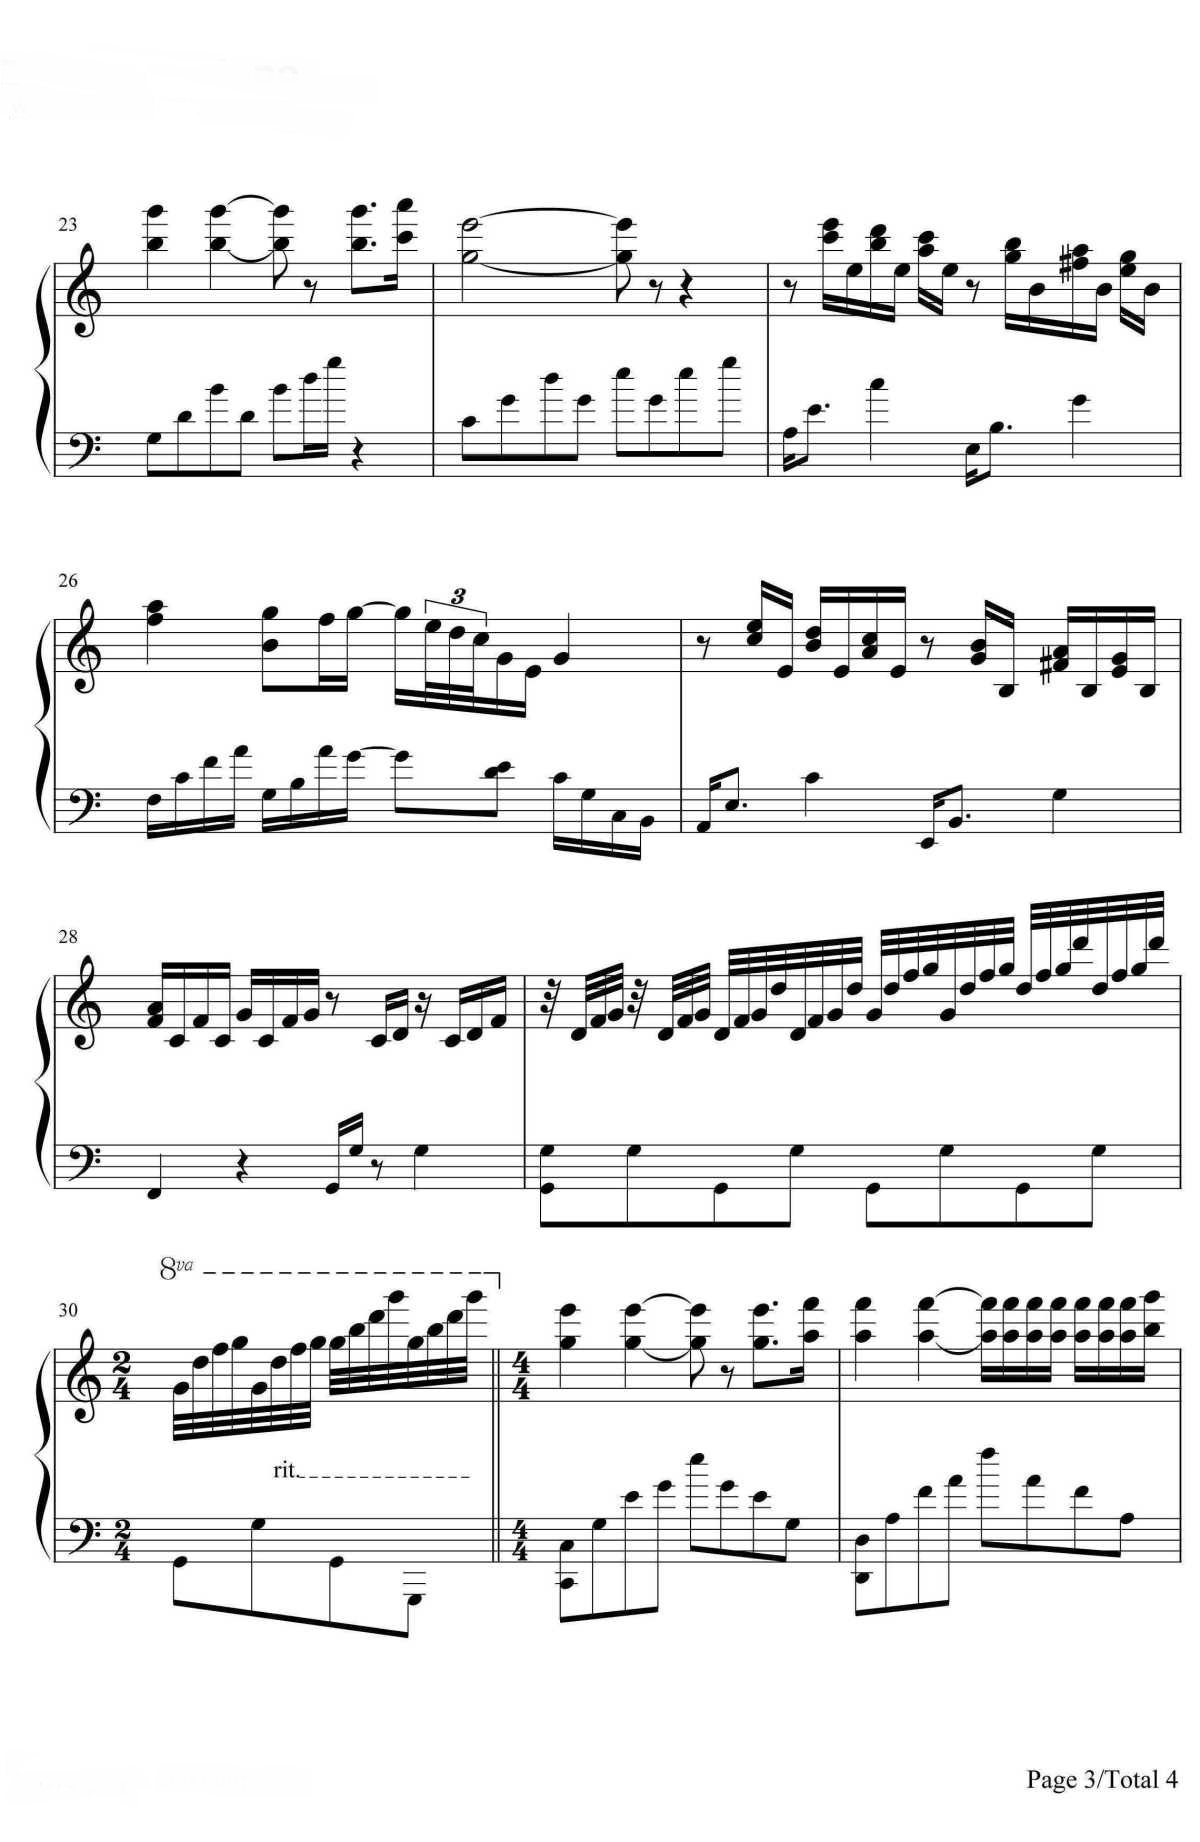 【水边的阿狄丽娜】的钢琴谱简谱 - Richard Clayderman
